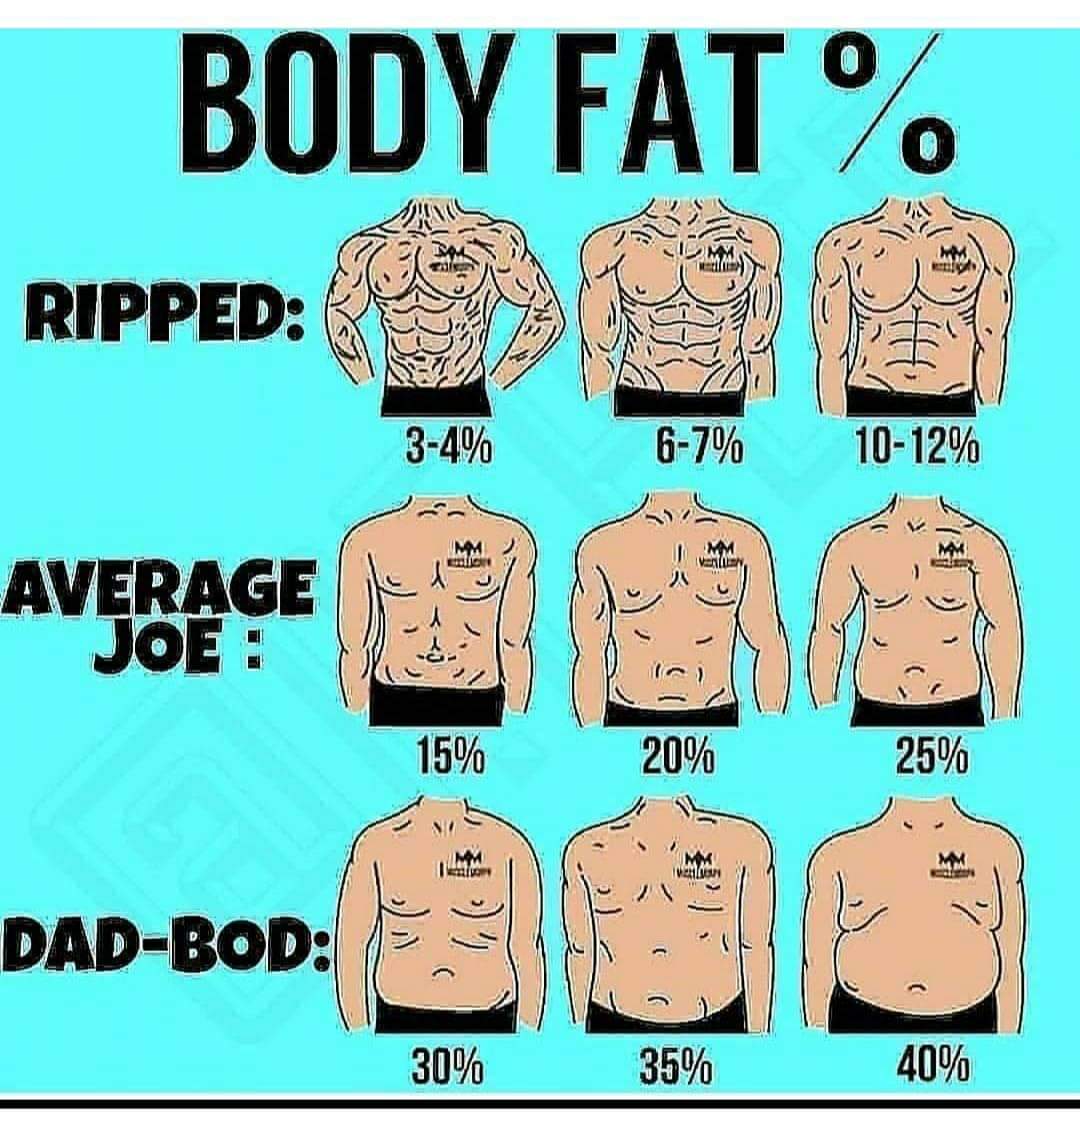 Body fat % #fat #bodyfat